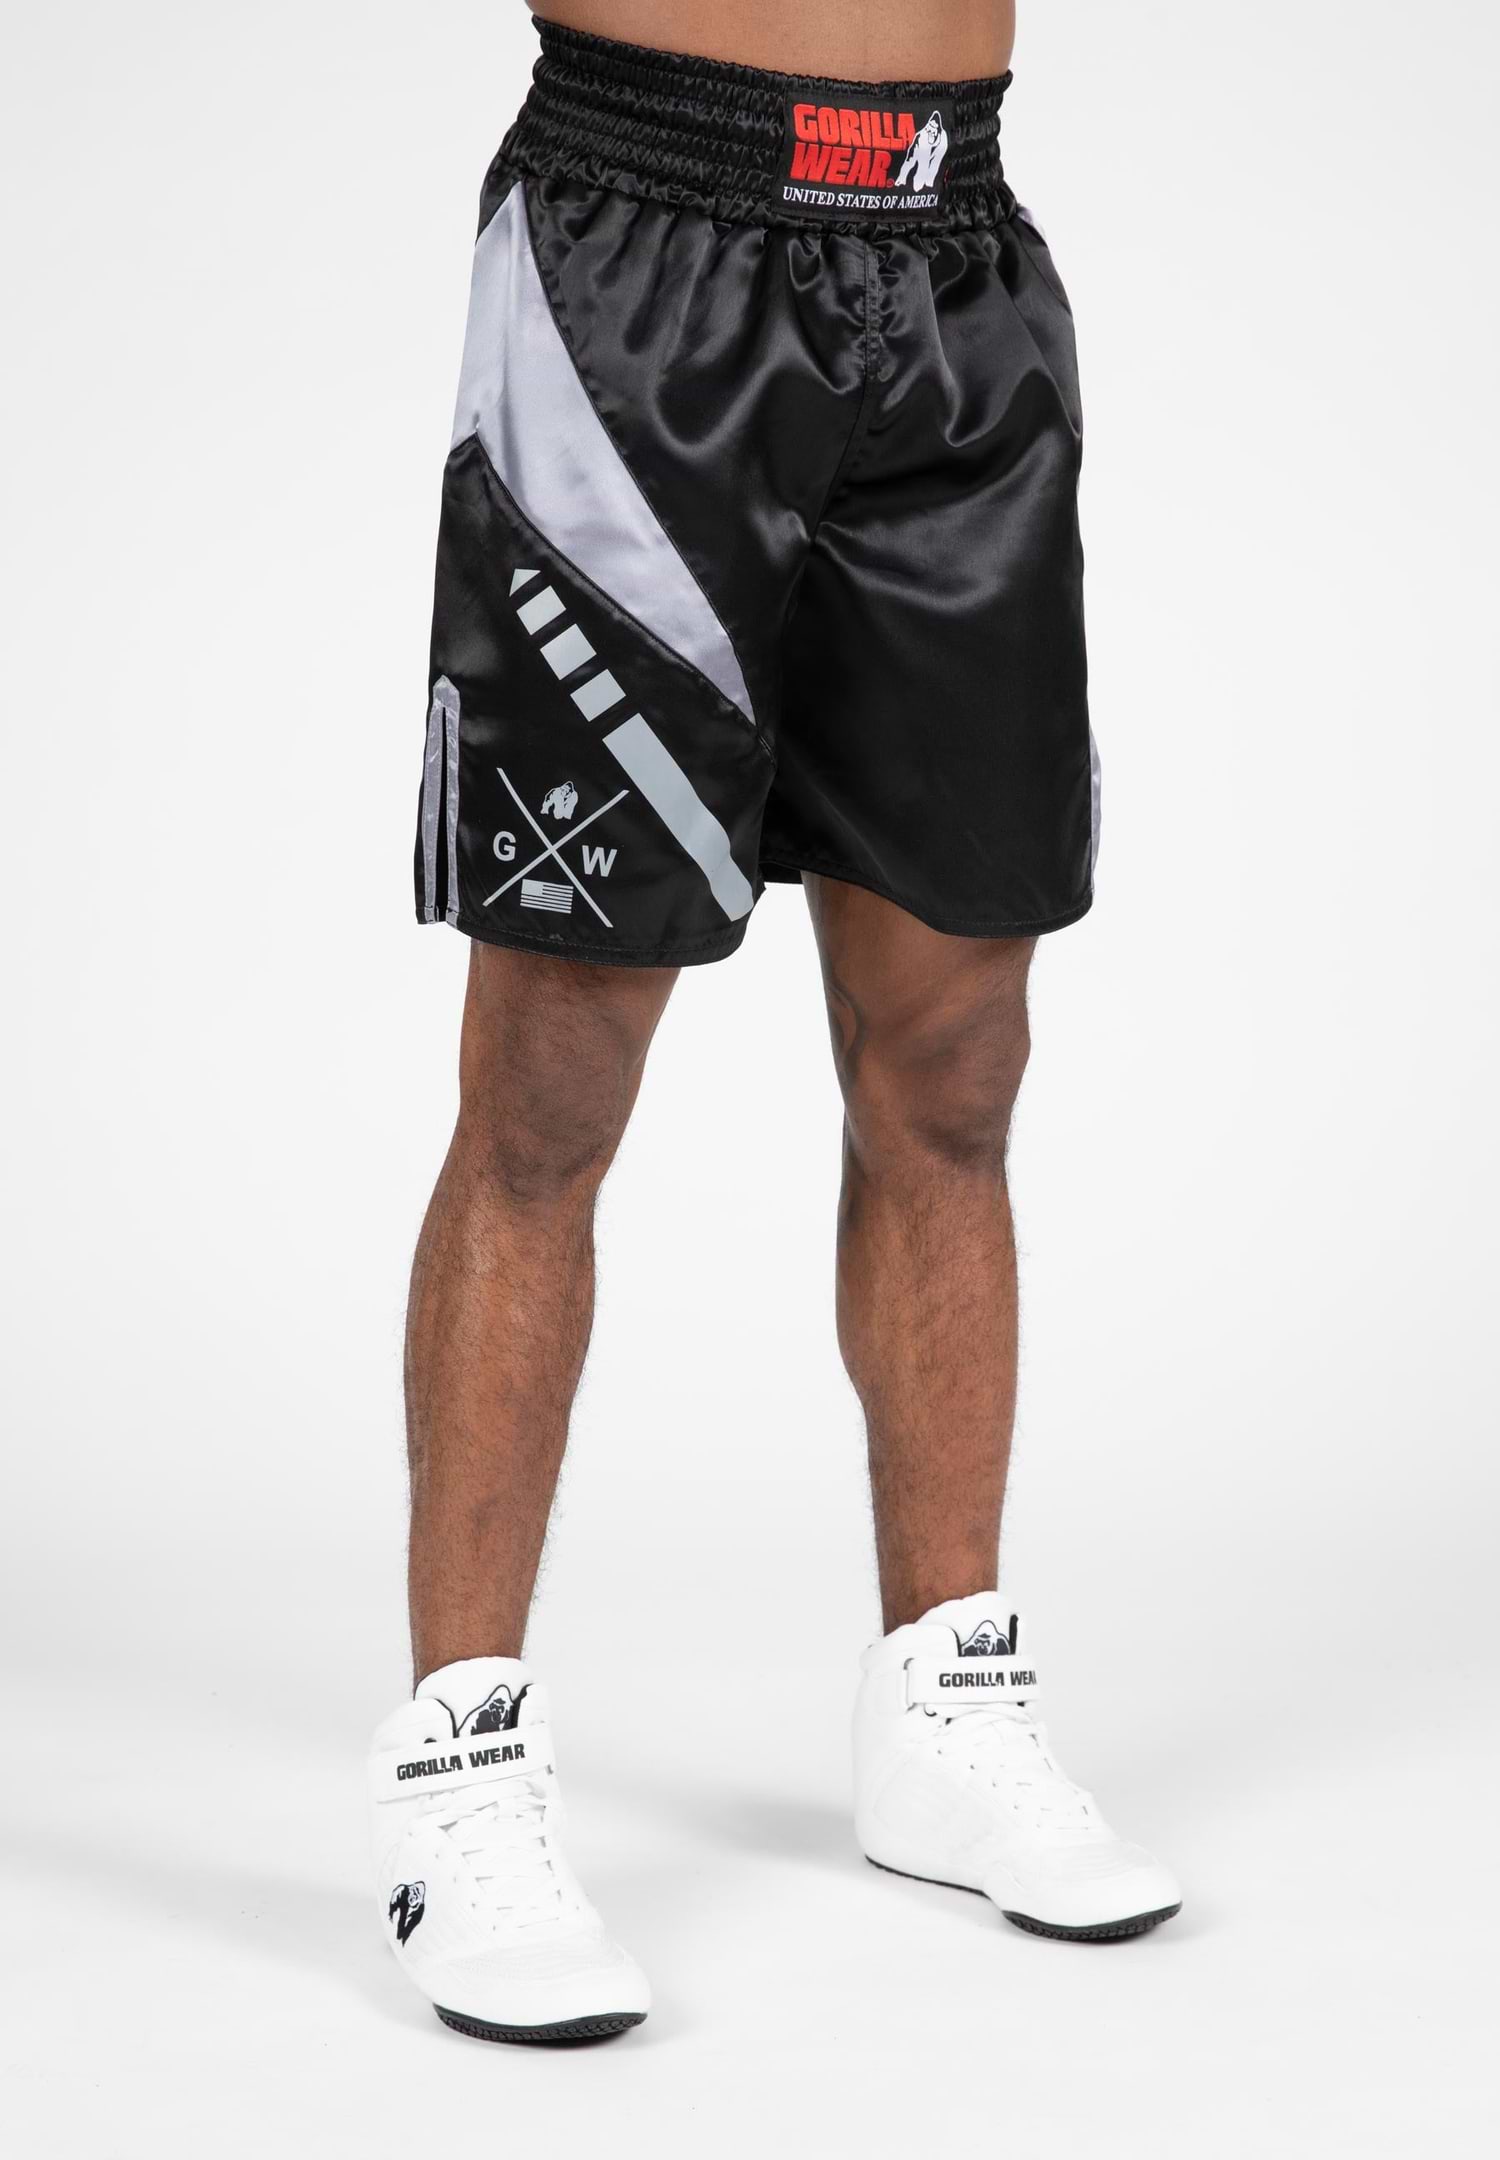 Boxer Shorts - Grey - Unisex